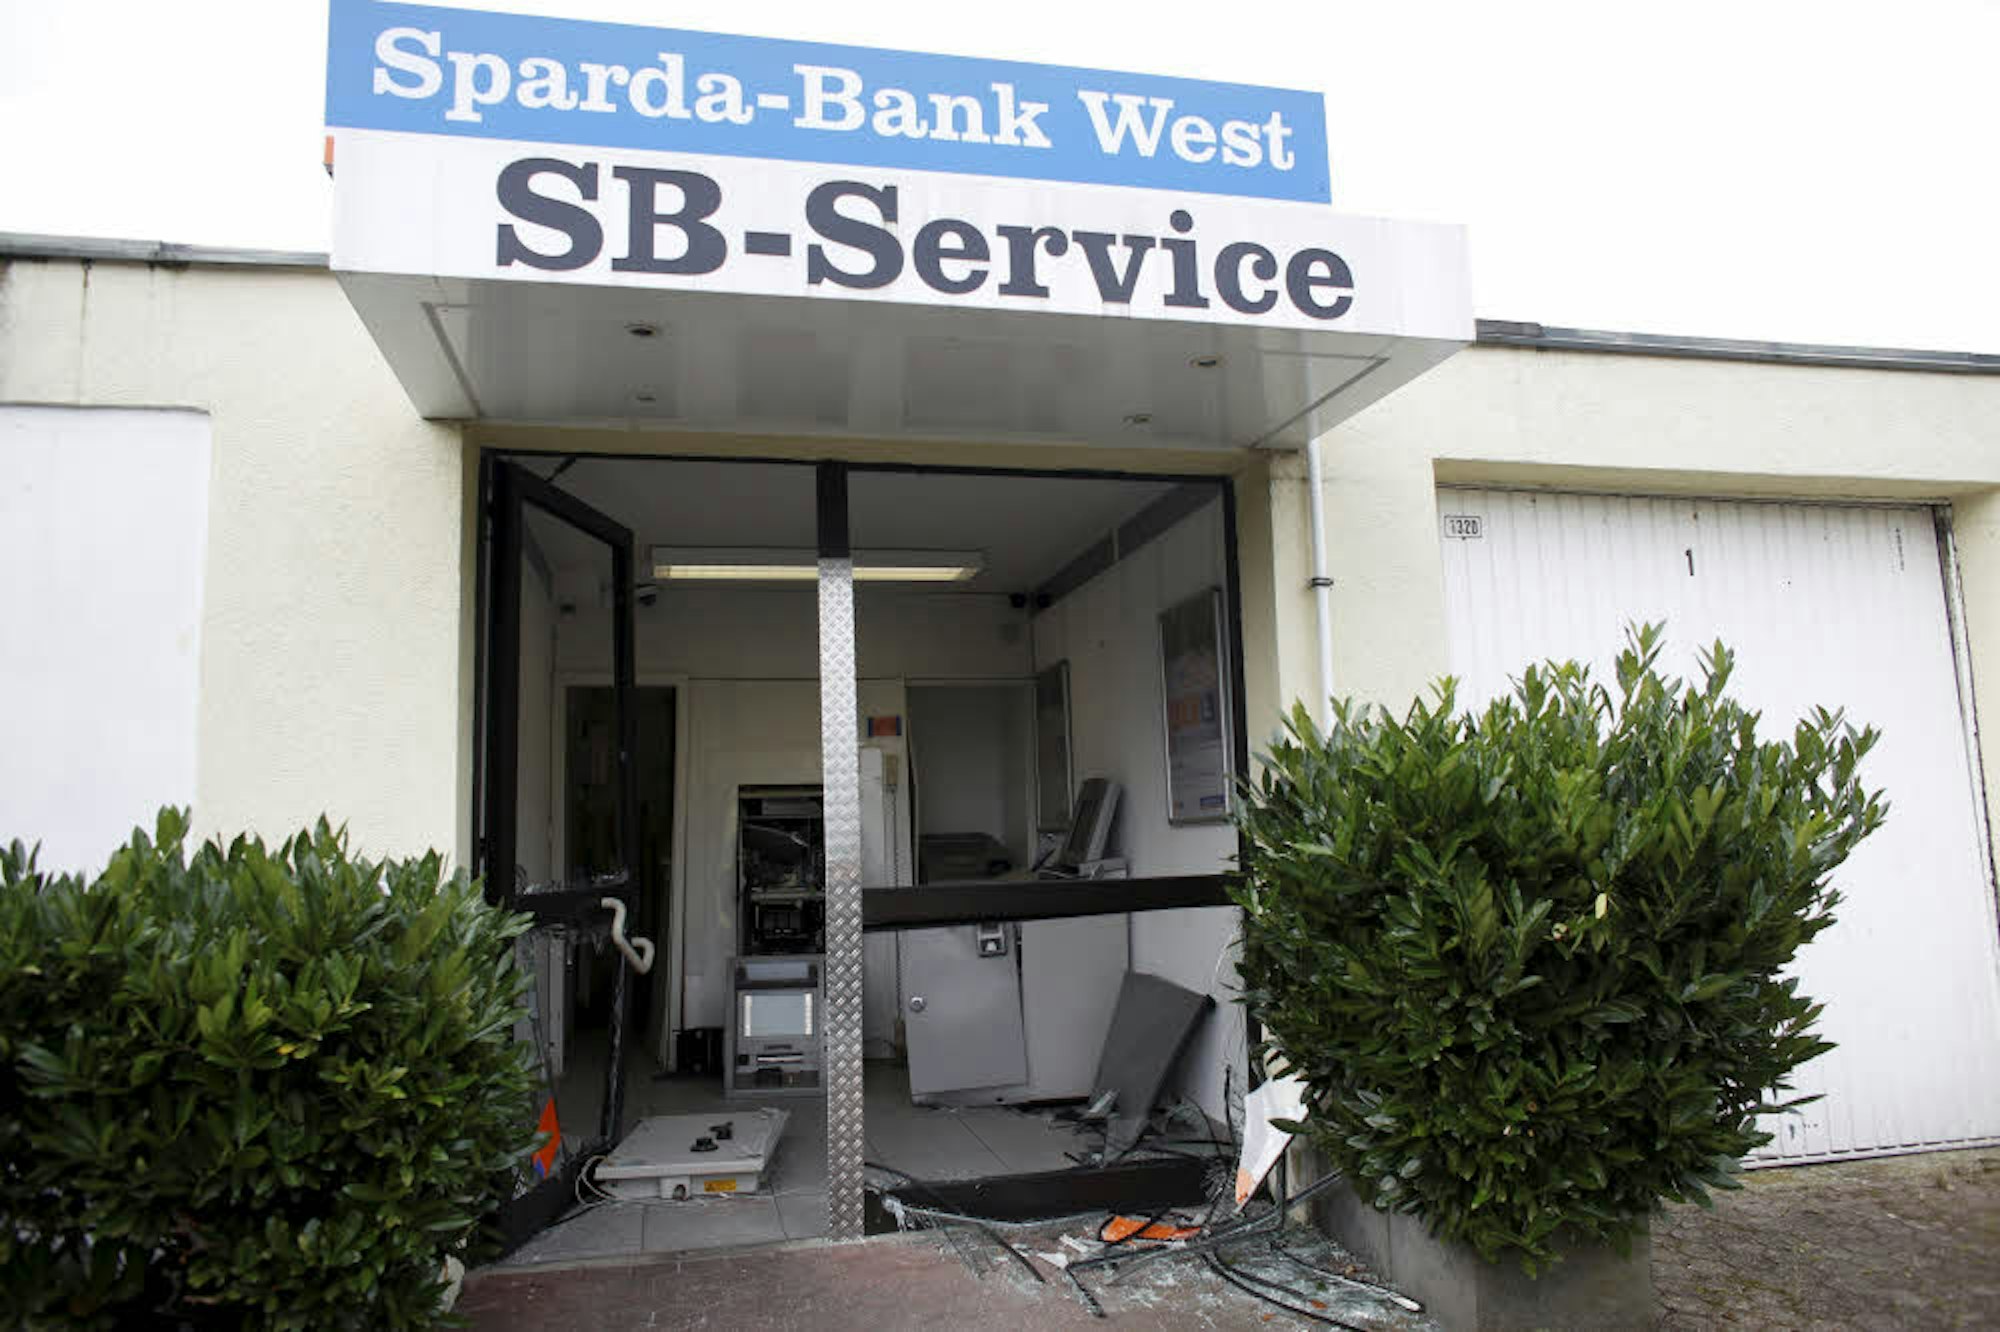 Am 7. Juli 2016 wurde die Gremberghovener Sparda-Bank-Filiale Ziel verwüstet.